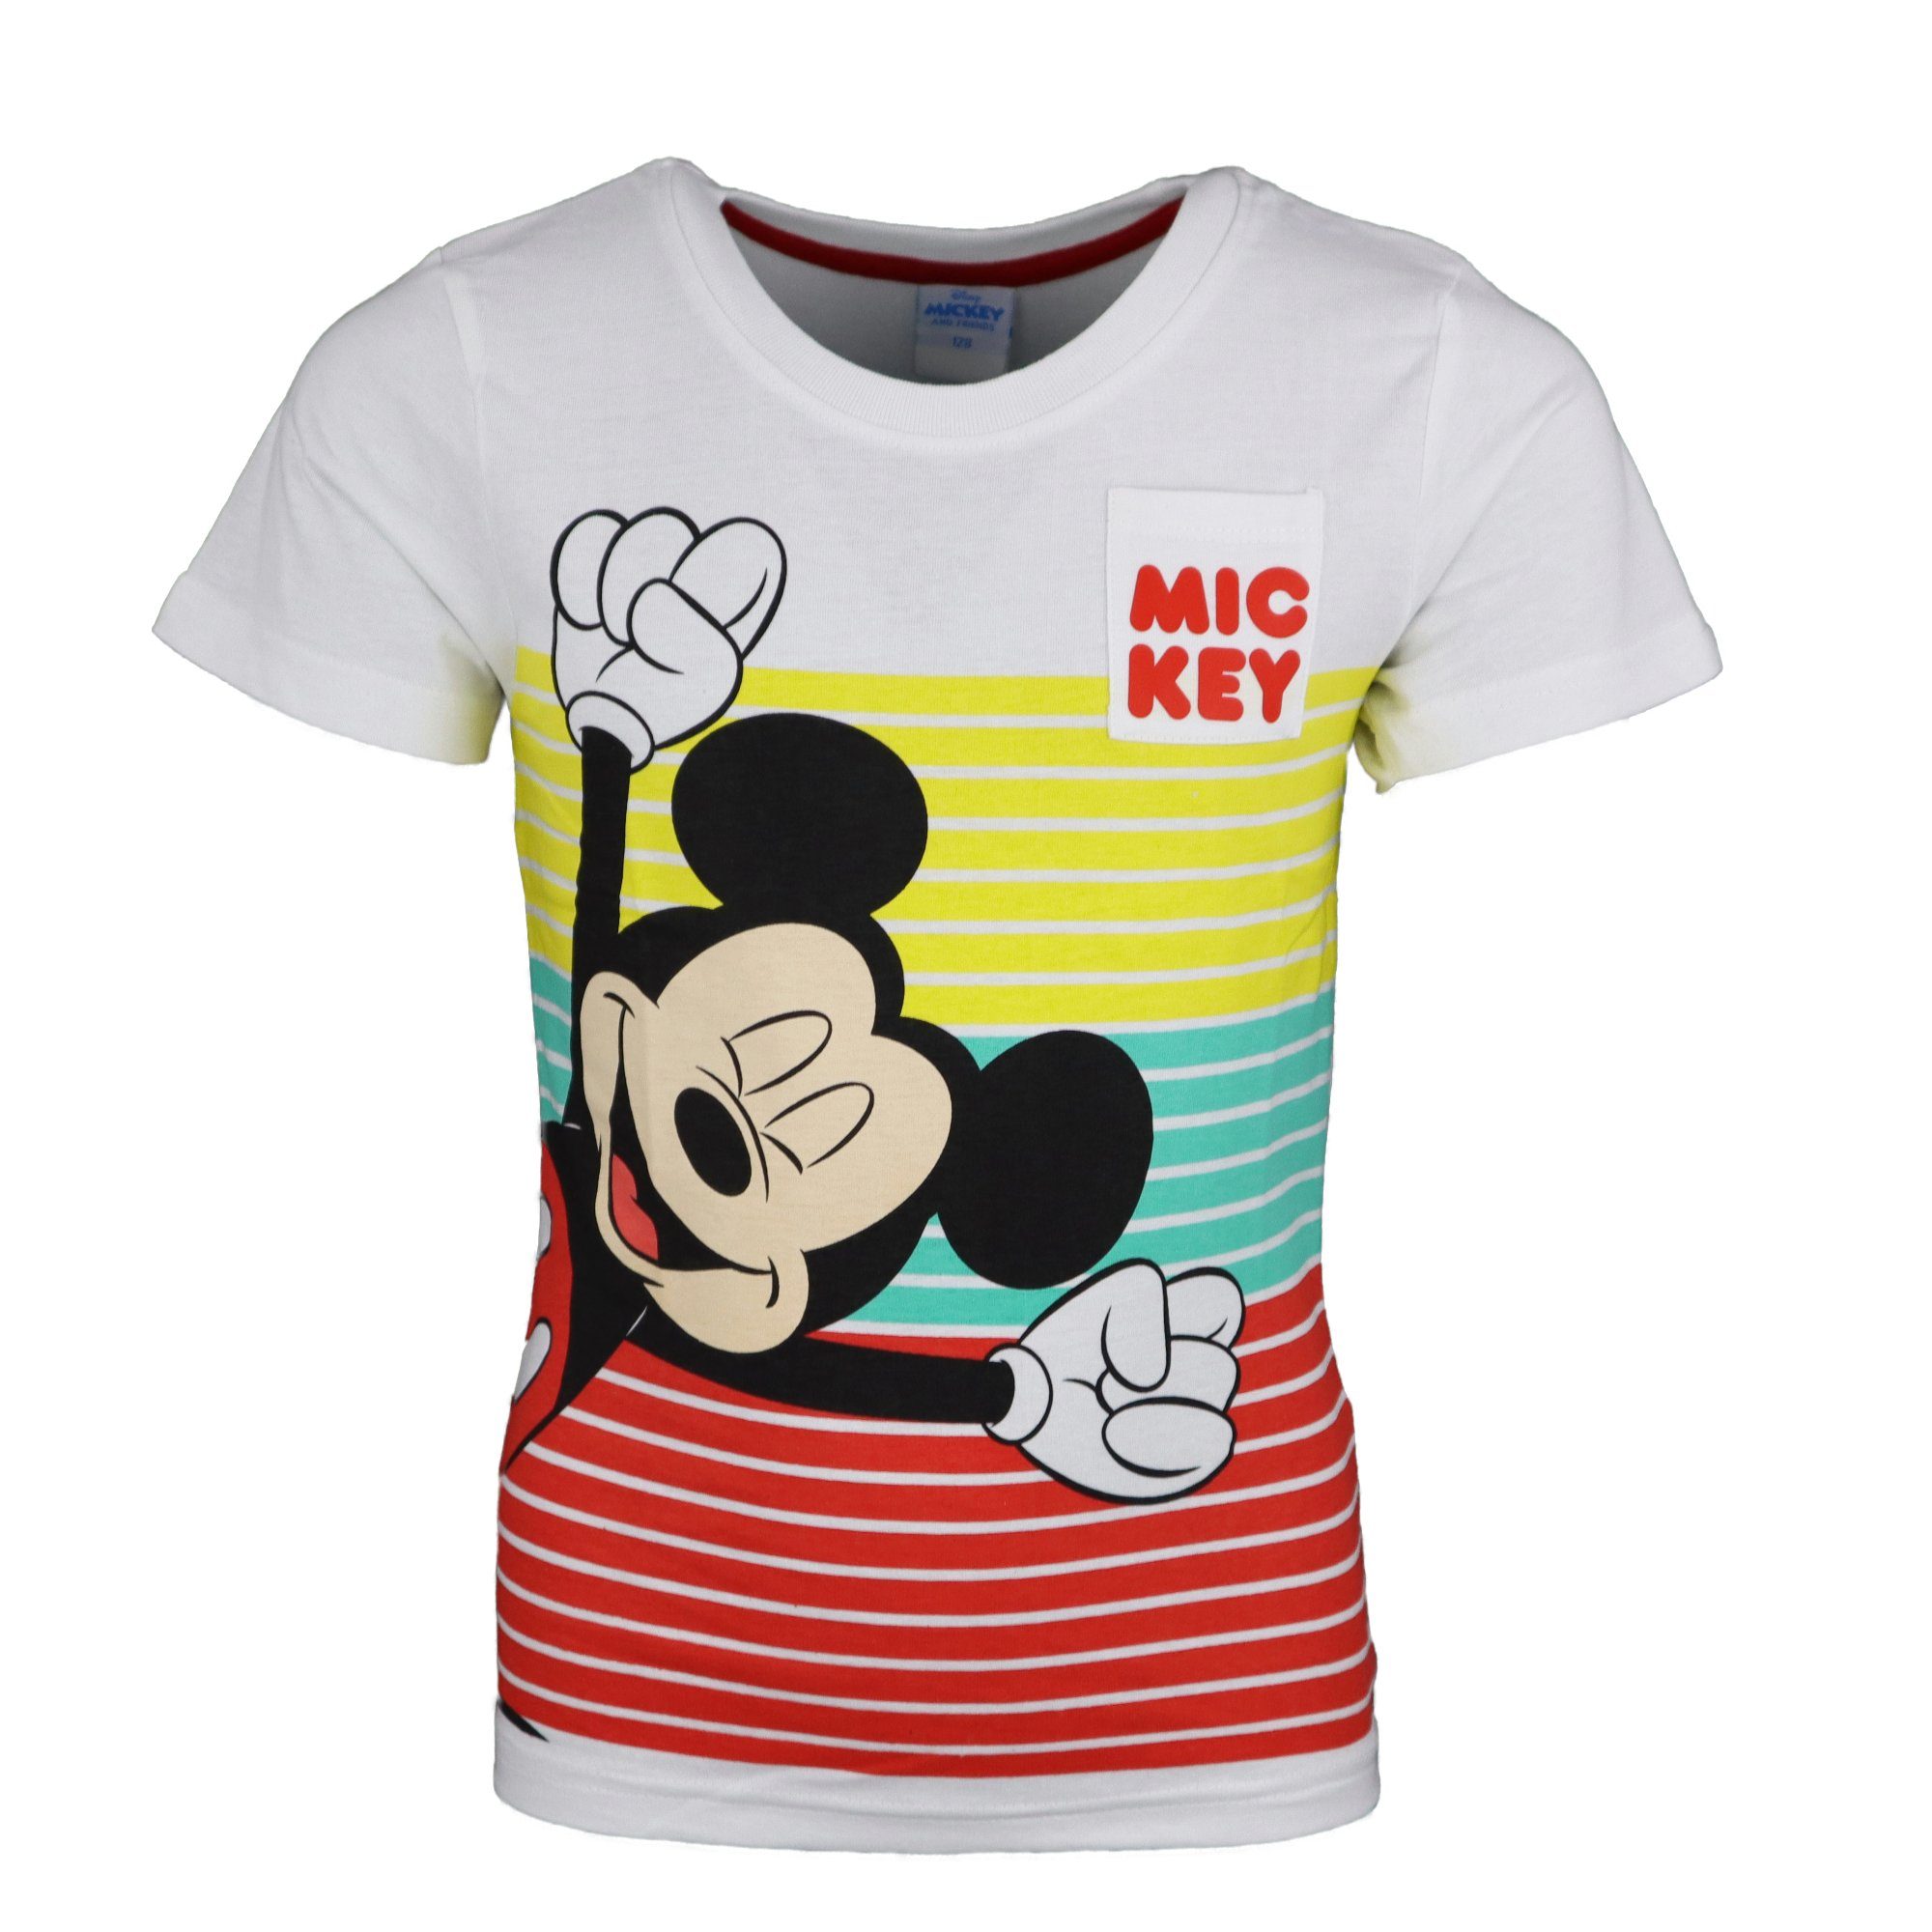 Disney Mickey Mouse Print-Shirt Mickey Baumwolle Kinder bis Jungen T-Shirt 100% Gr. Maus 128, 98 kurzarm